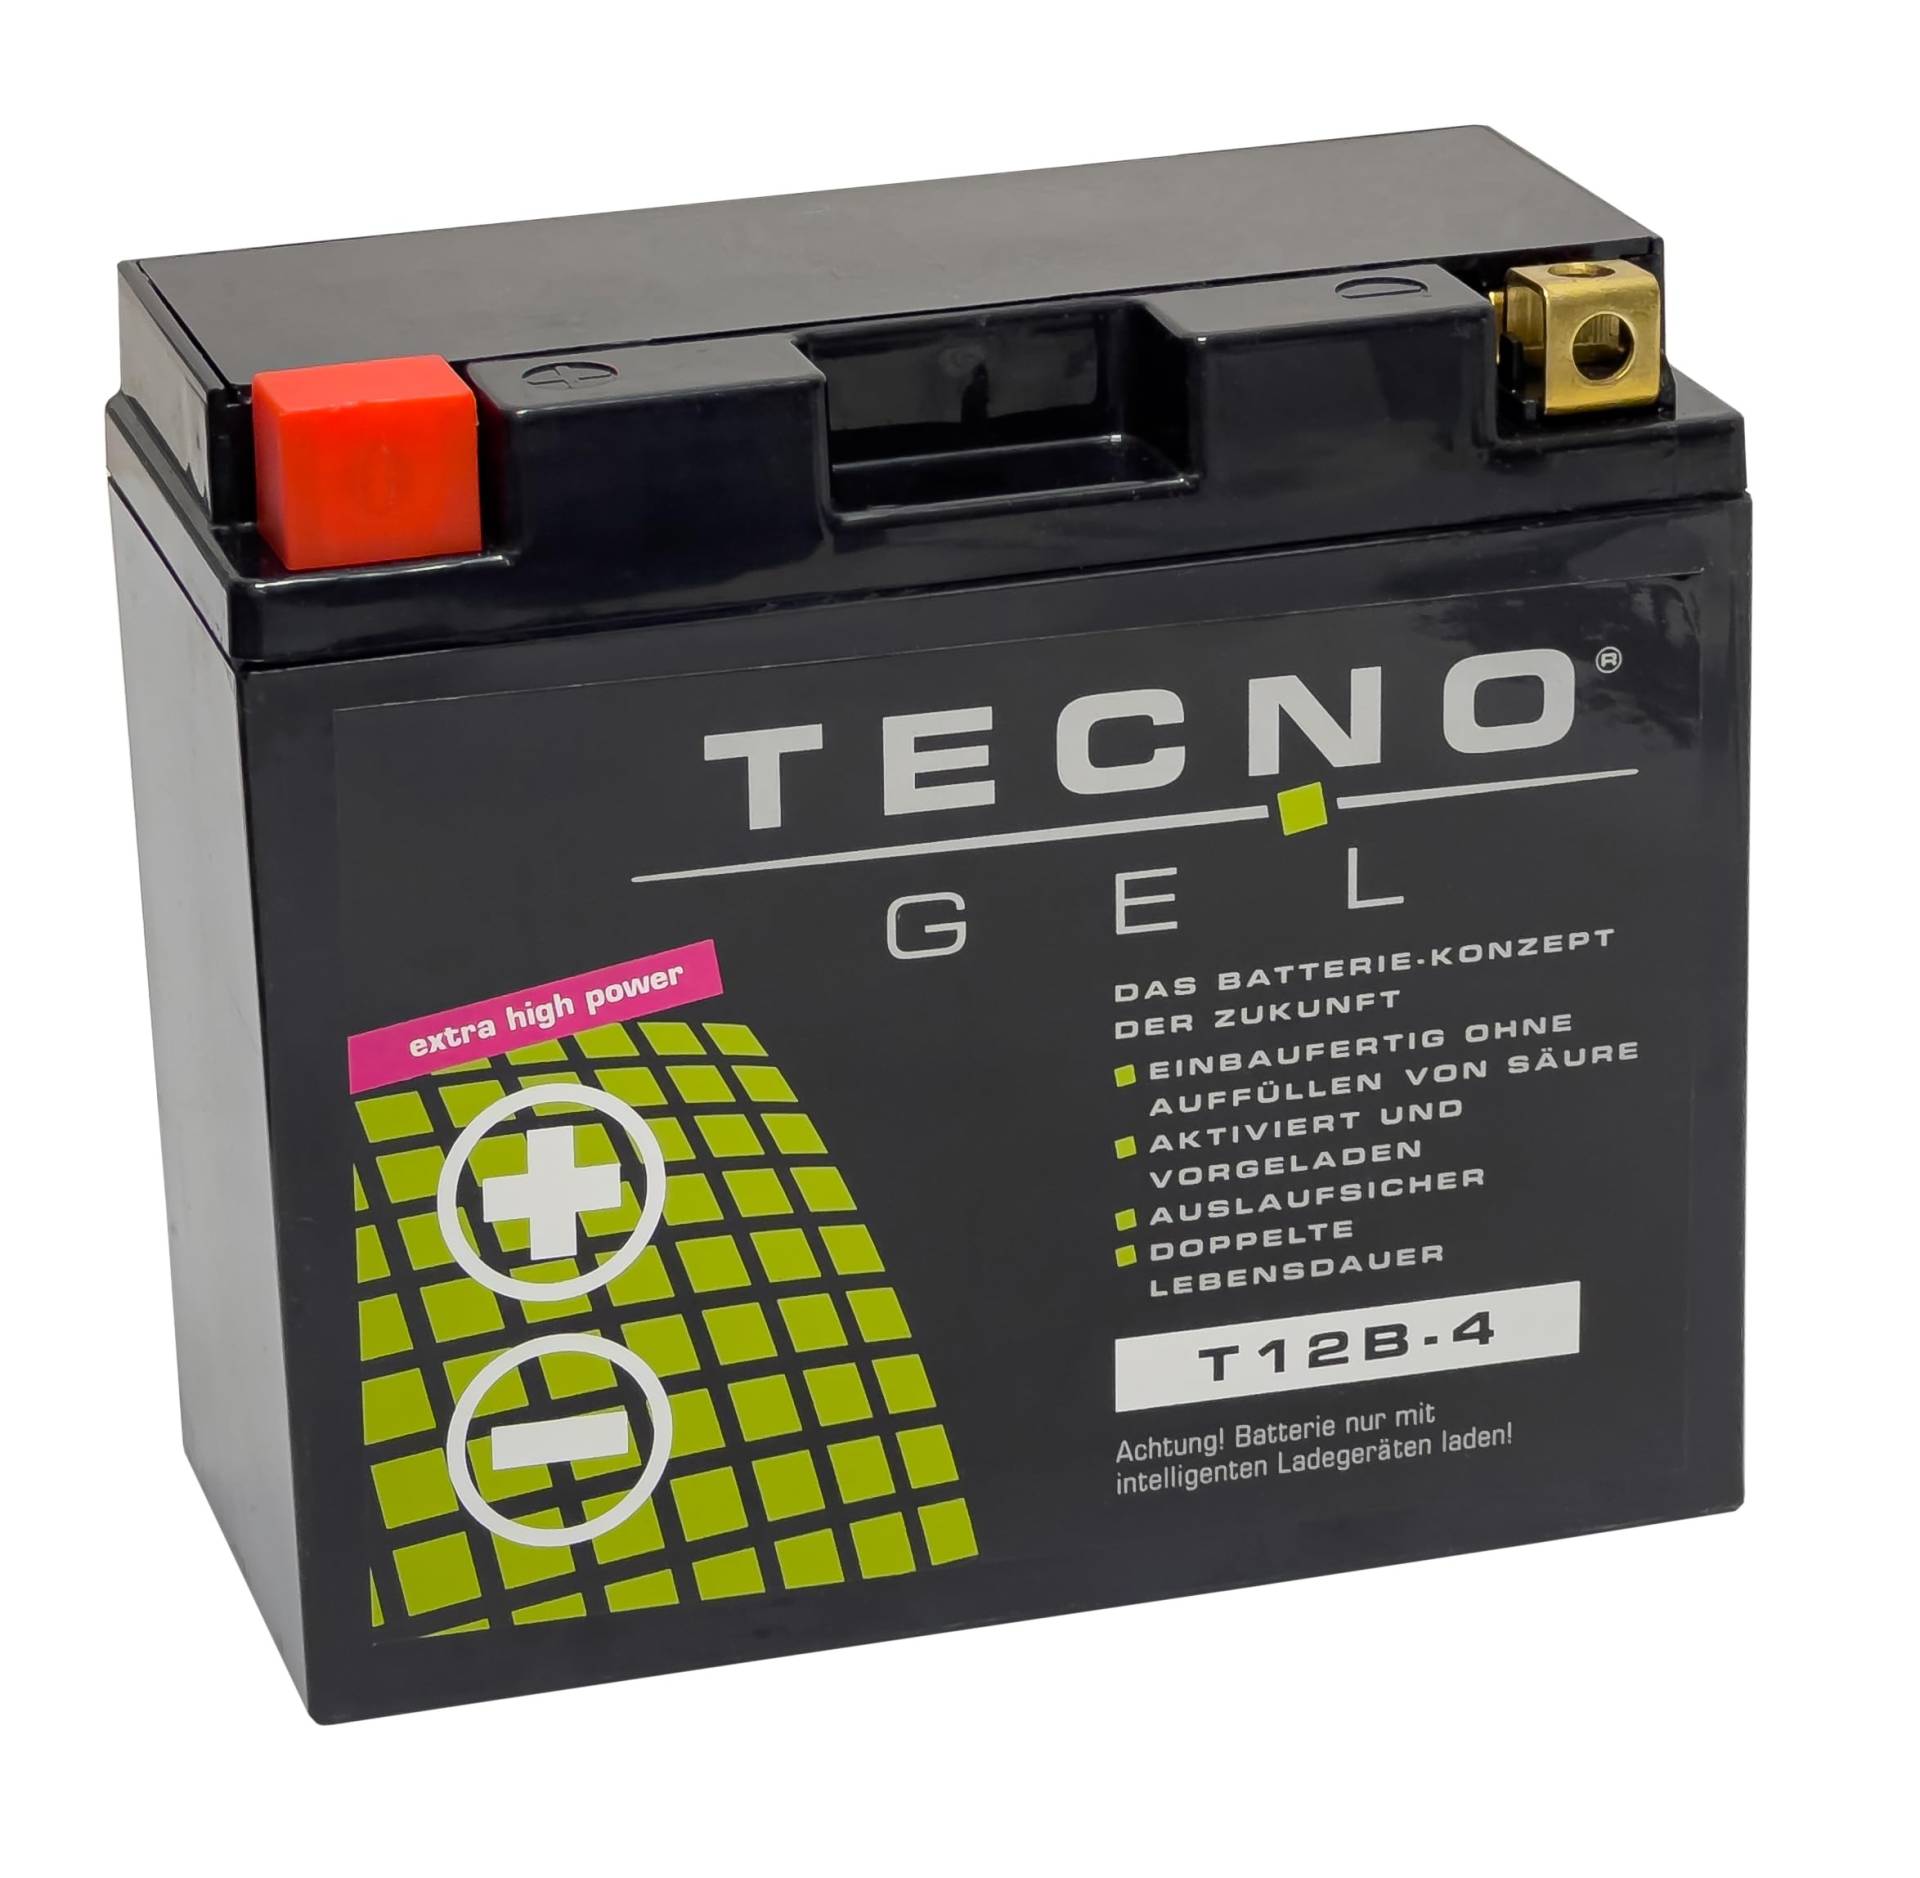 TECNO-GEL BATTERIE für YT12B-4 = YT12B-BS (DIN 51290) für Yamaha FZ6 600/S2 600 u.a. von Wirth-Federn